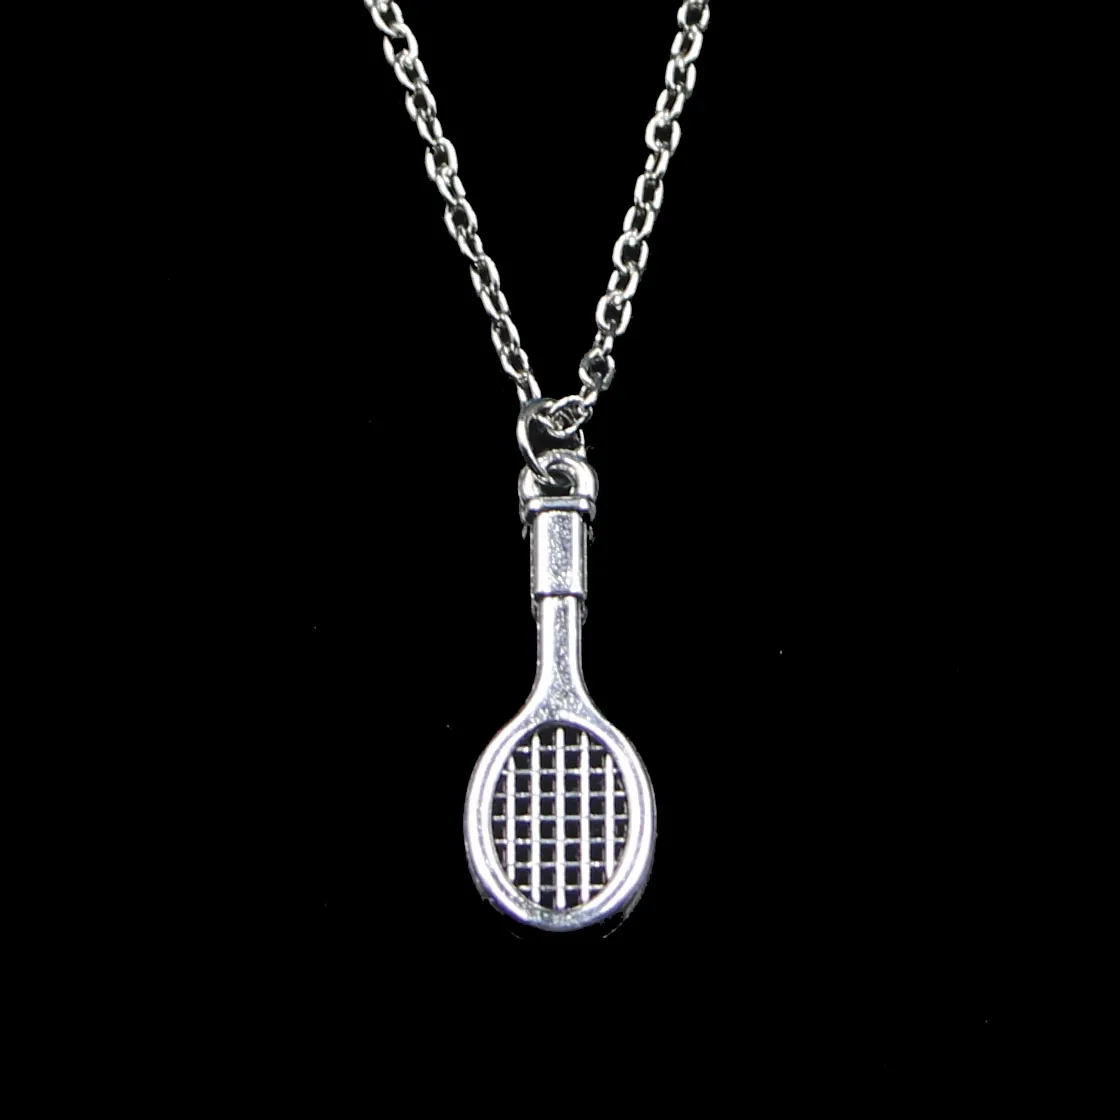 Mode 29*10mm Tennis Schläger Anhänger Halskette Link Kette Für Weibliche Choker Halskette Kreative Schmuck party Geschenk